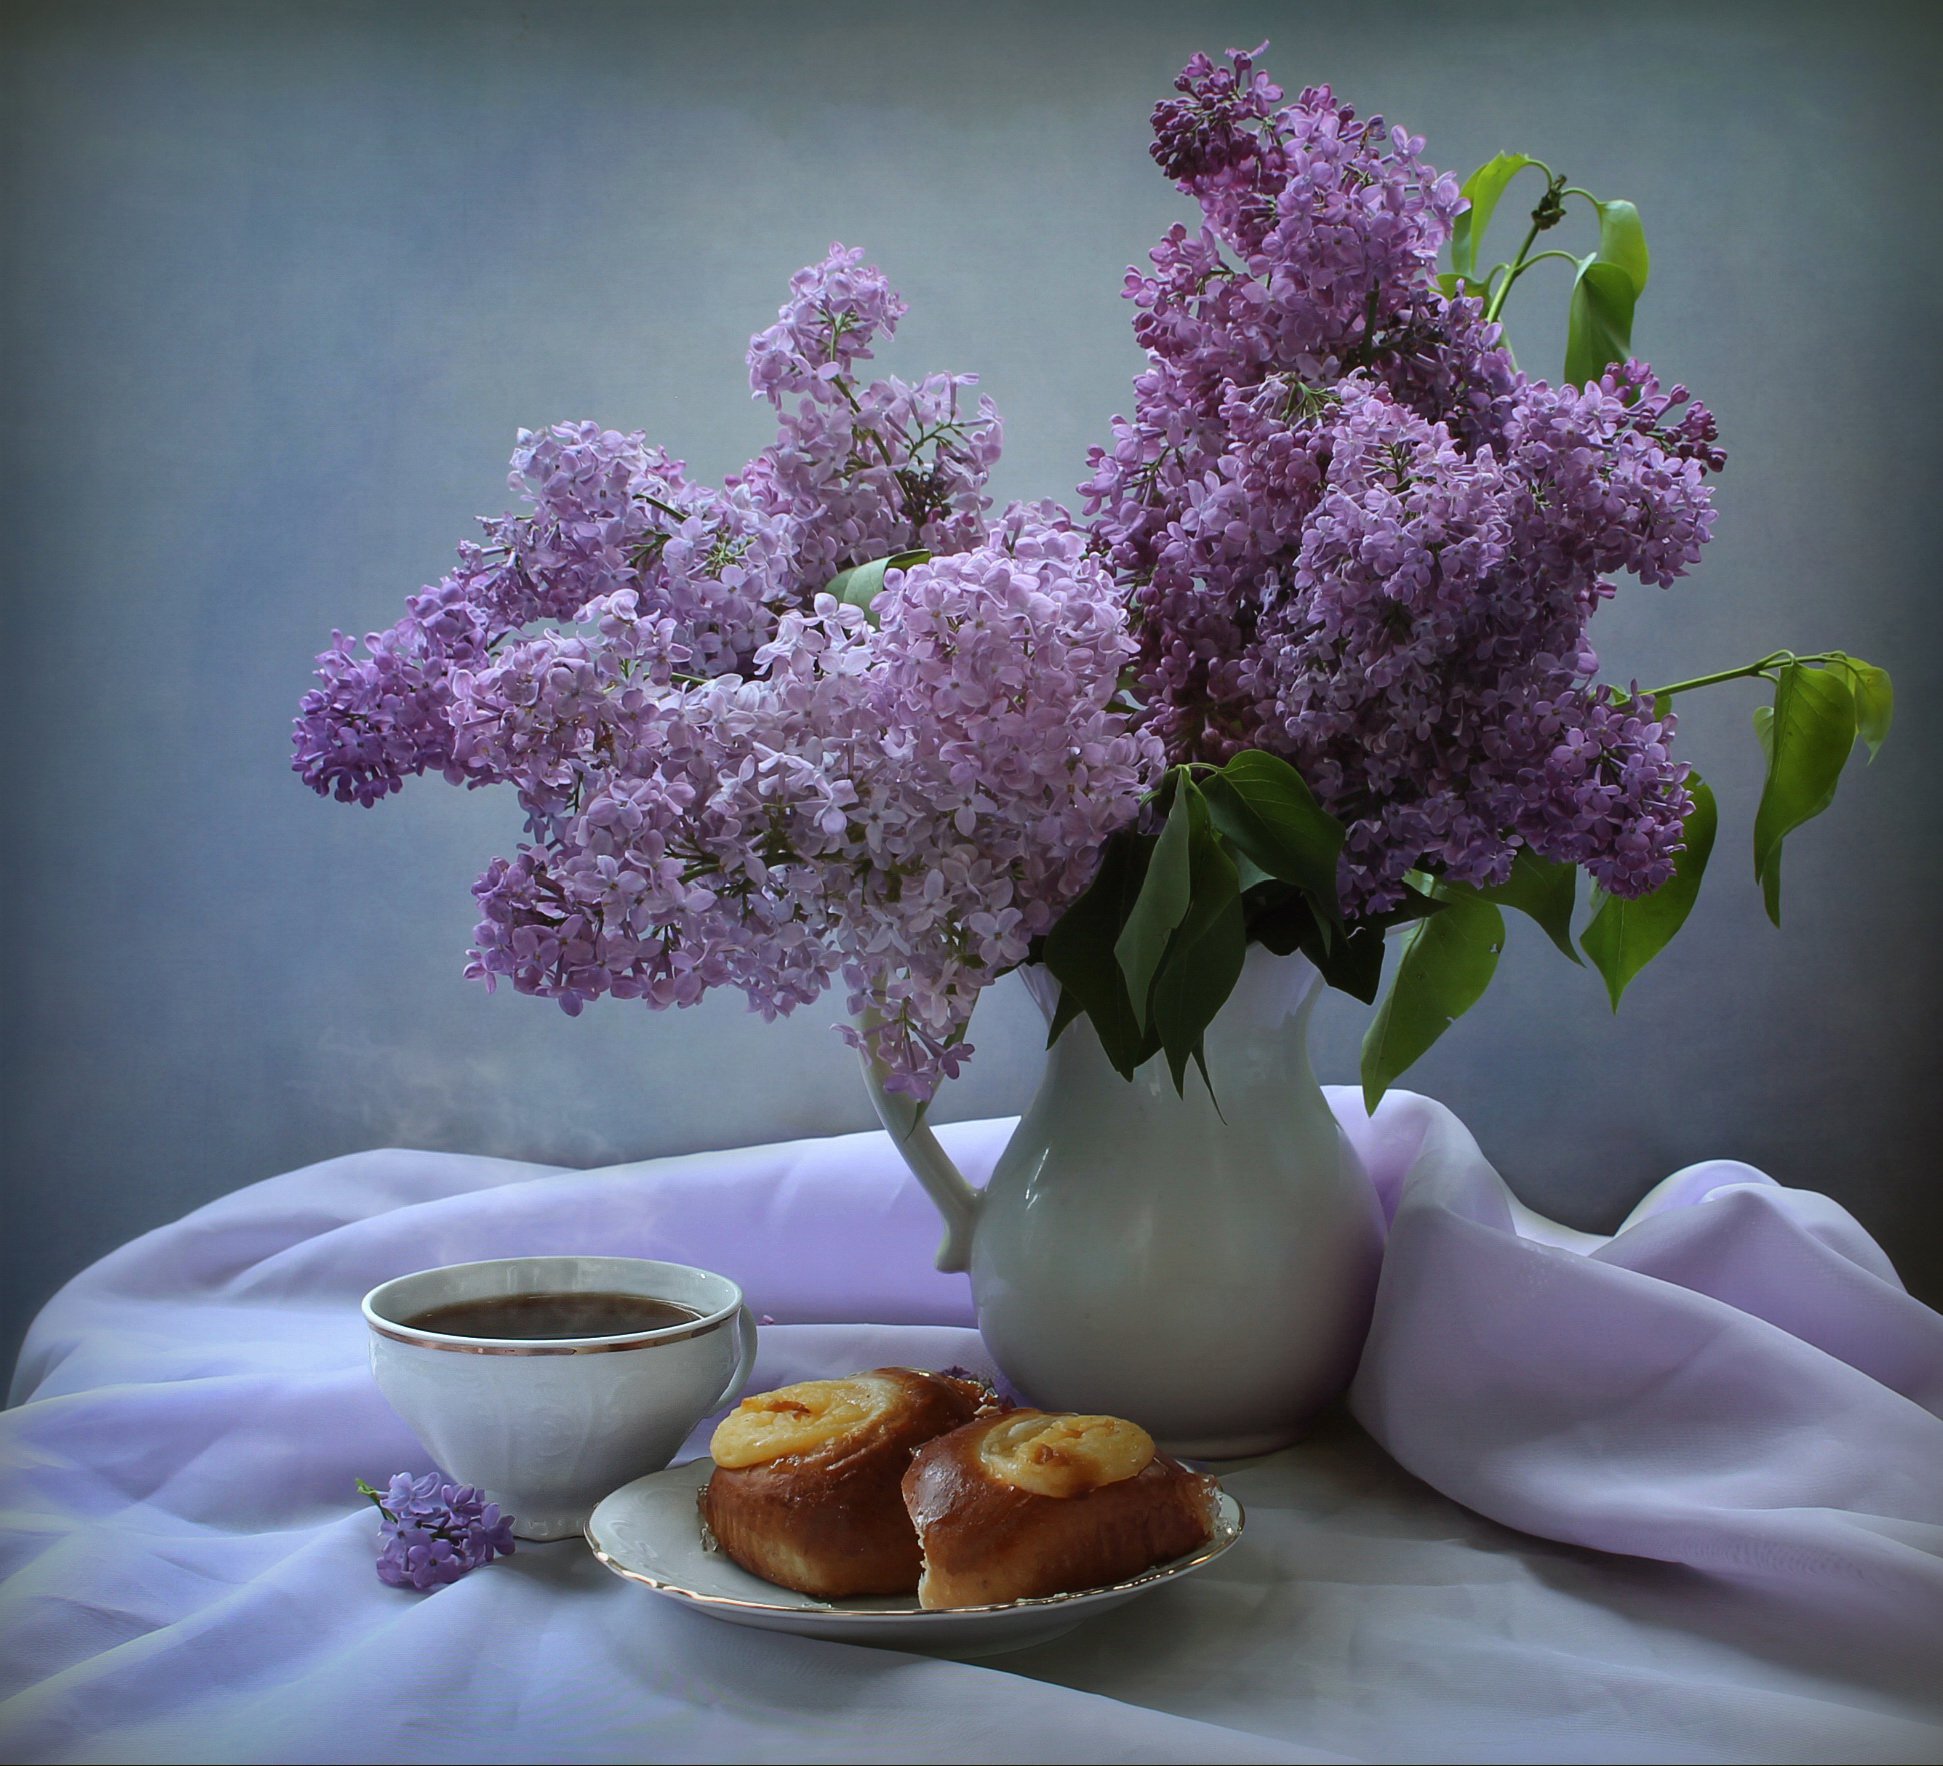 май, весна, натюрморт, цветы, сирень, чай, Ковалева Светлана